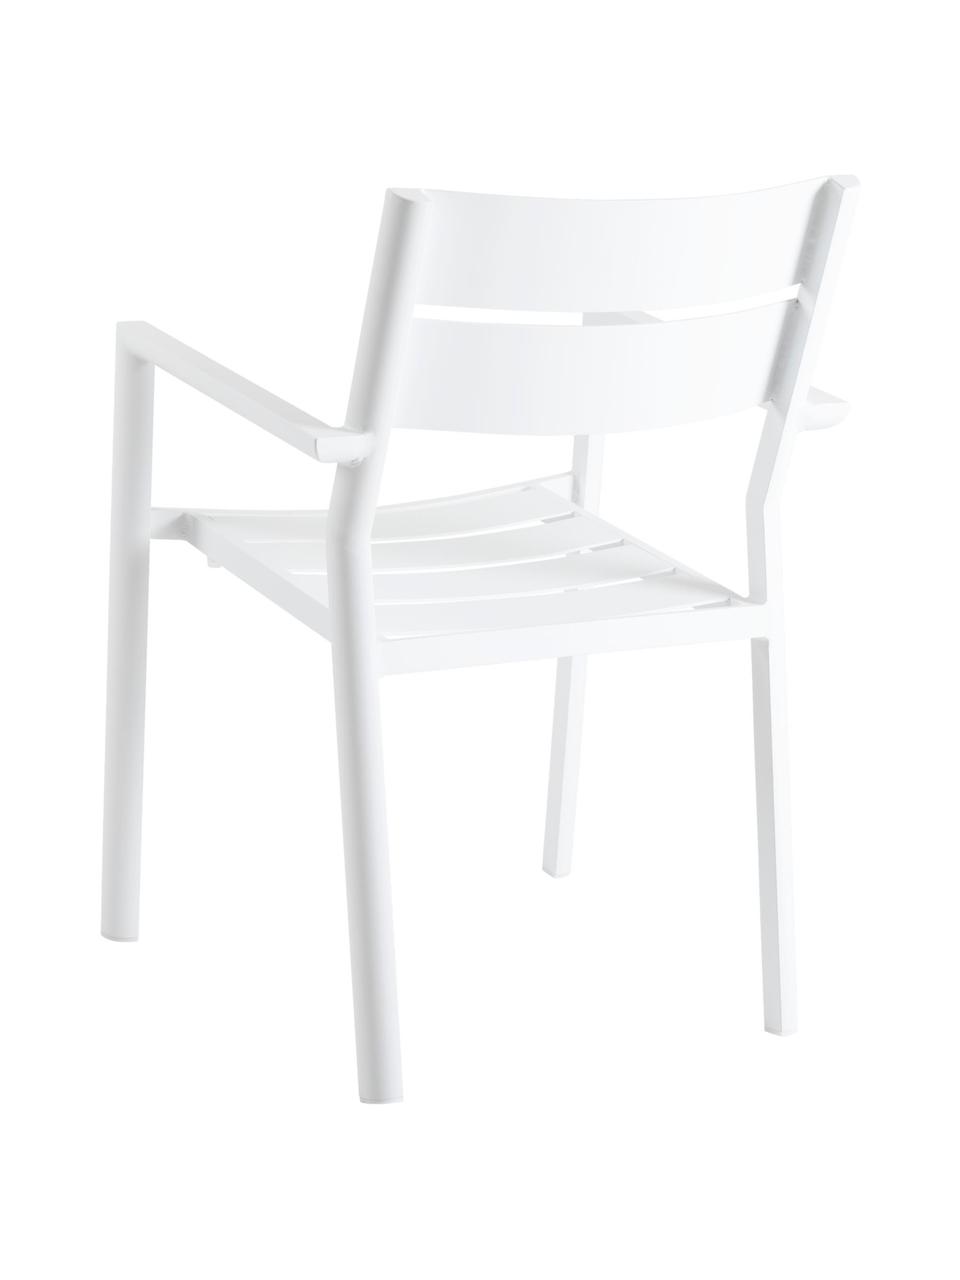 Fotel ogrodowy do układania w stos Adele, Aluminium malowane proszkowo, Biały, S 55 x G 55 cm